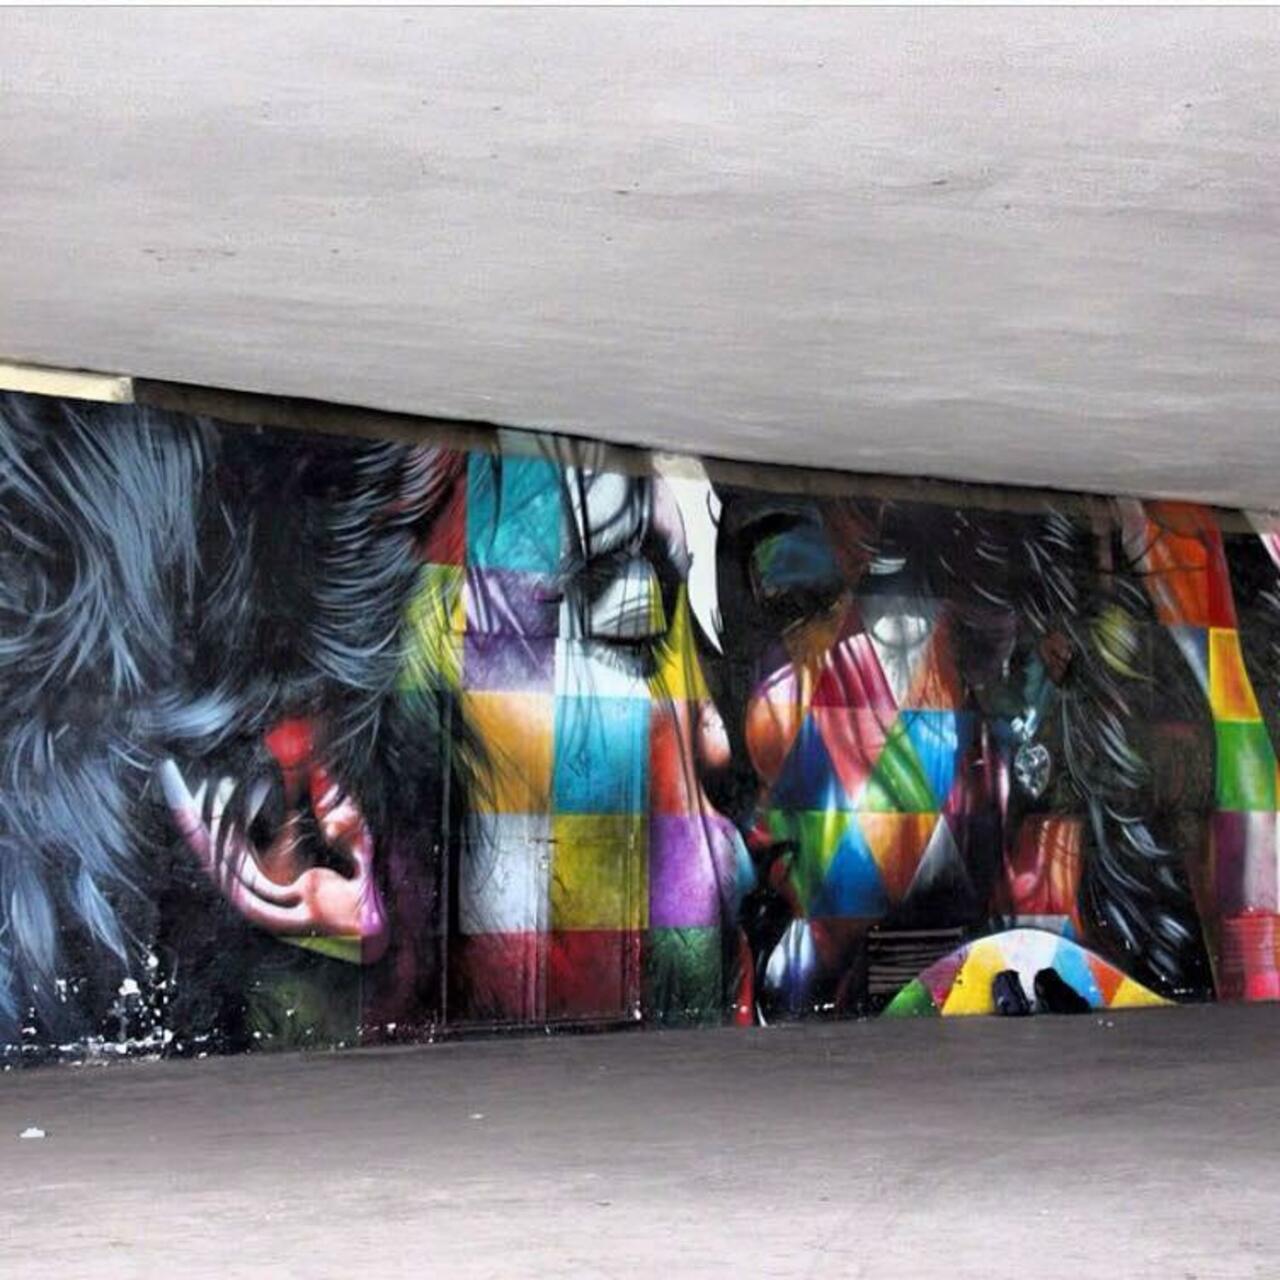 “RT@GoogleStreetArt: New Street Art by the brilliant Eduardo Kobra 

#art #mural #graffiti #streetart http://t.co/6tkAJsD9jY”